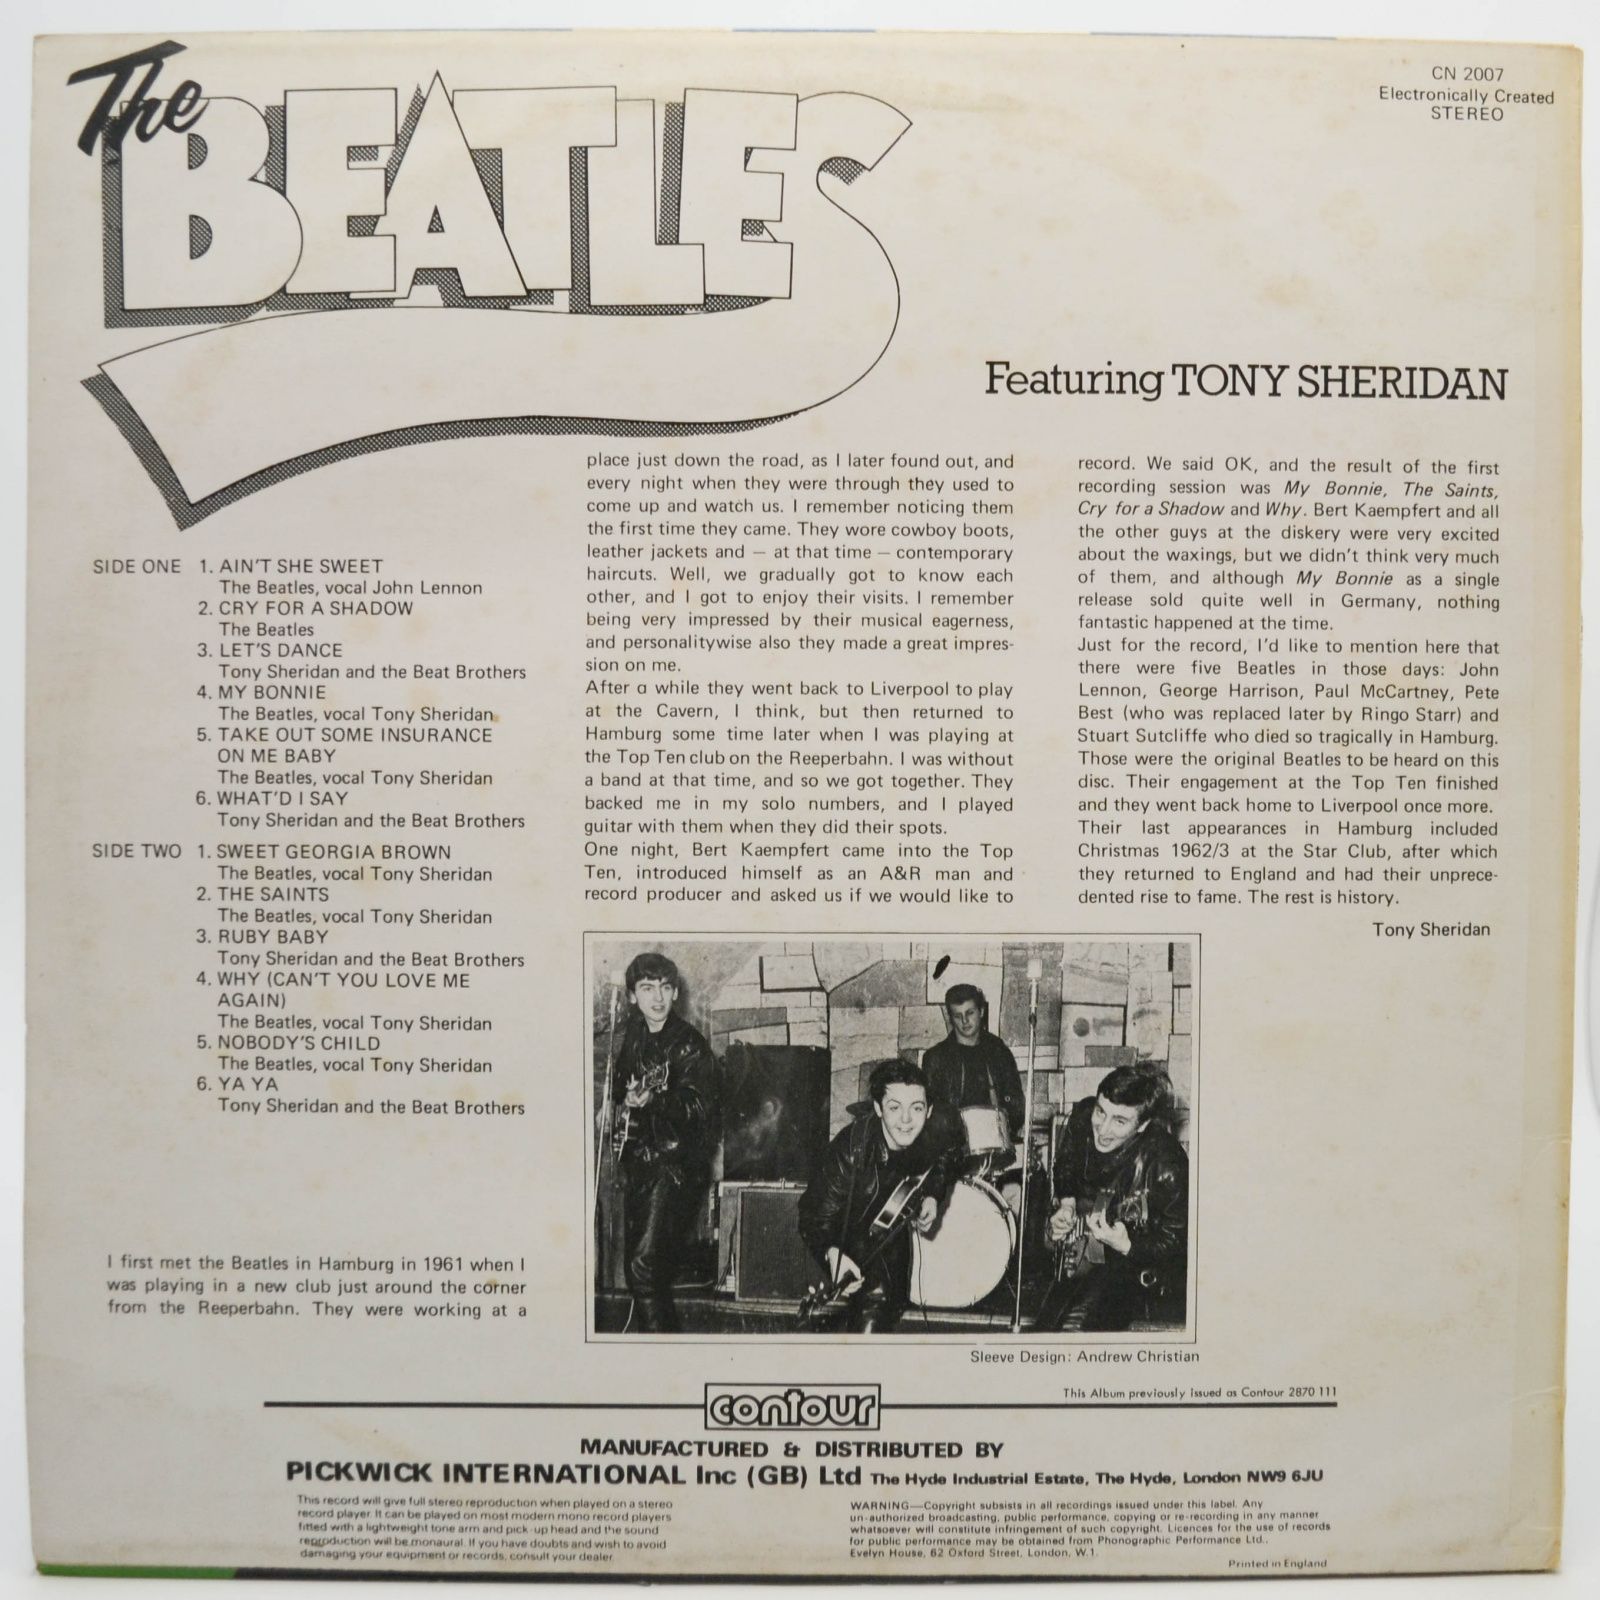 Beatles Featuring Tony Sheridan — The Beatles Featuring Tony Sheridan (UK), 1964